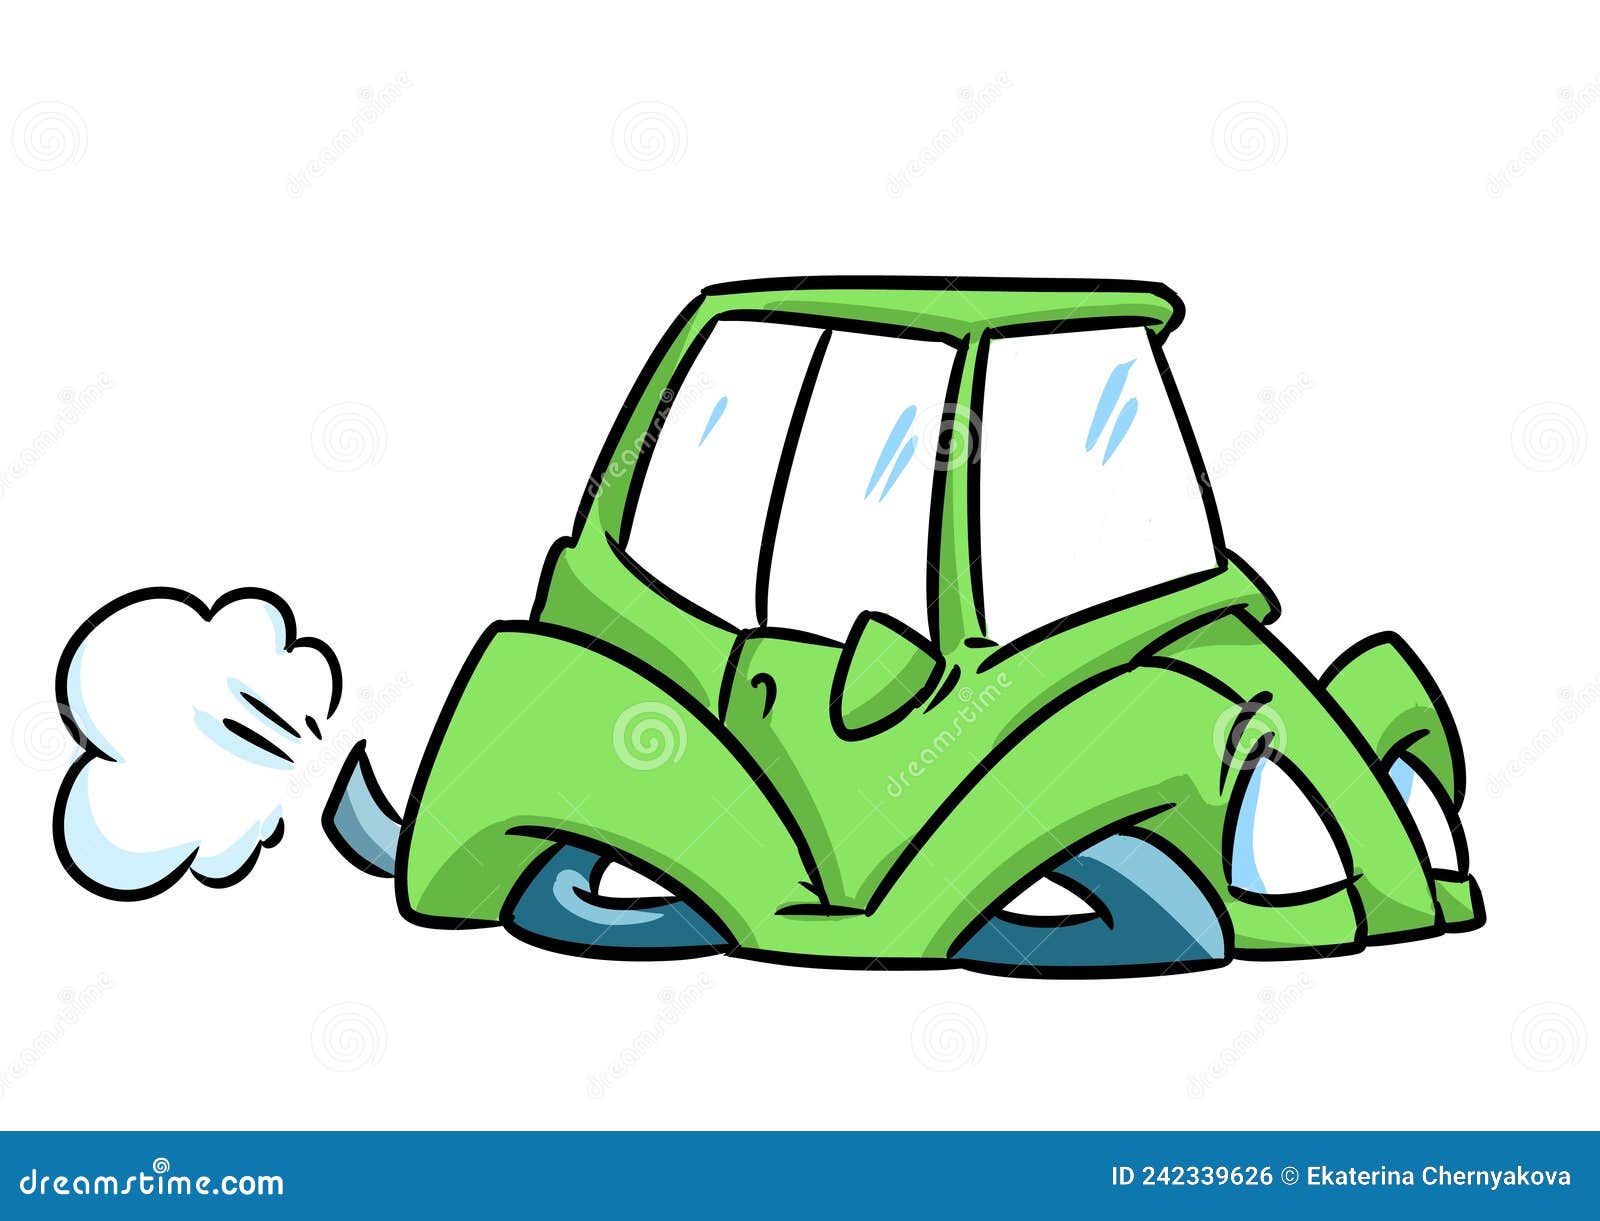 Green Small Car Caricature Transportation Illustration Cartoon Stock ...